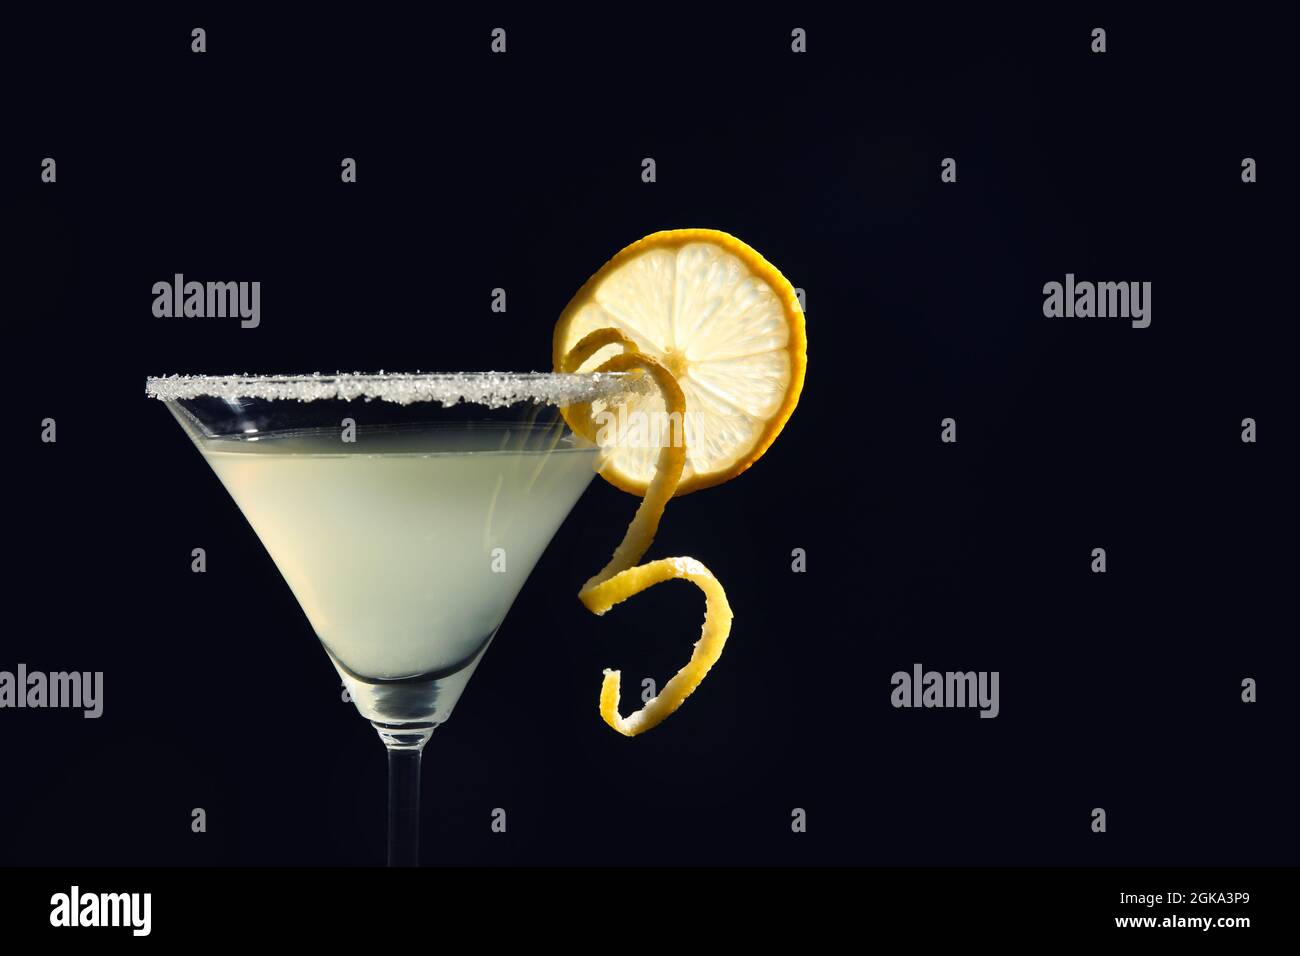 Vaso de martini con gota de limón con una rebanada de fruta sobre fondo negro Fotografía stock Alamy